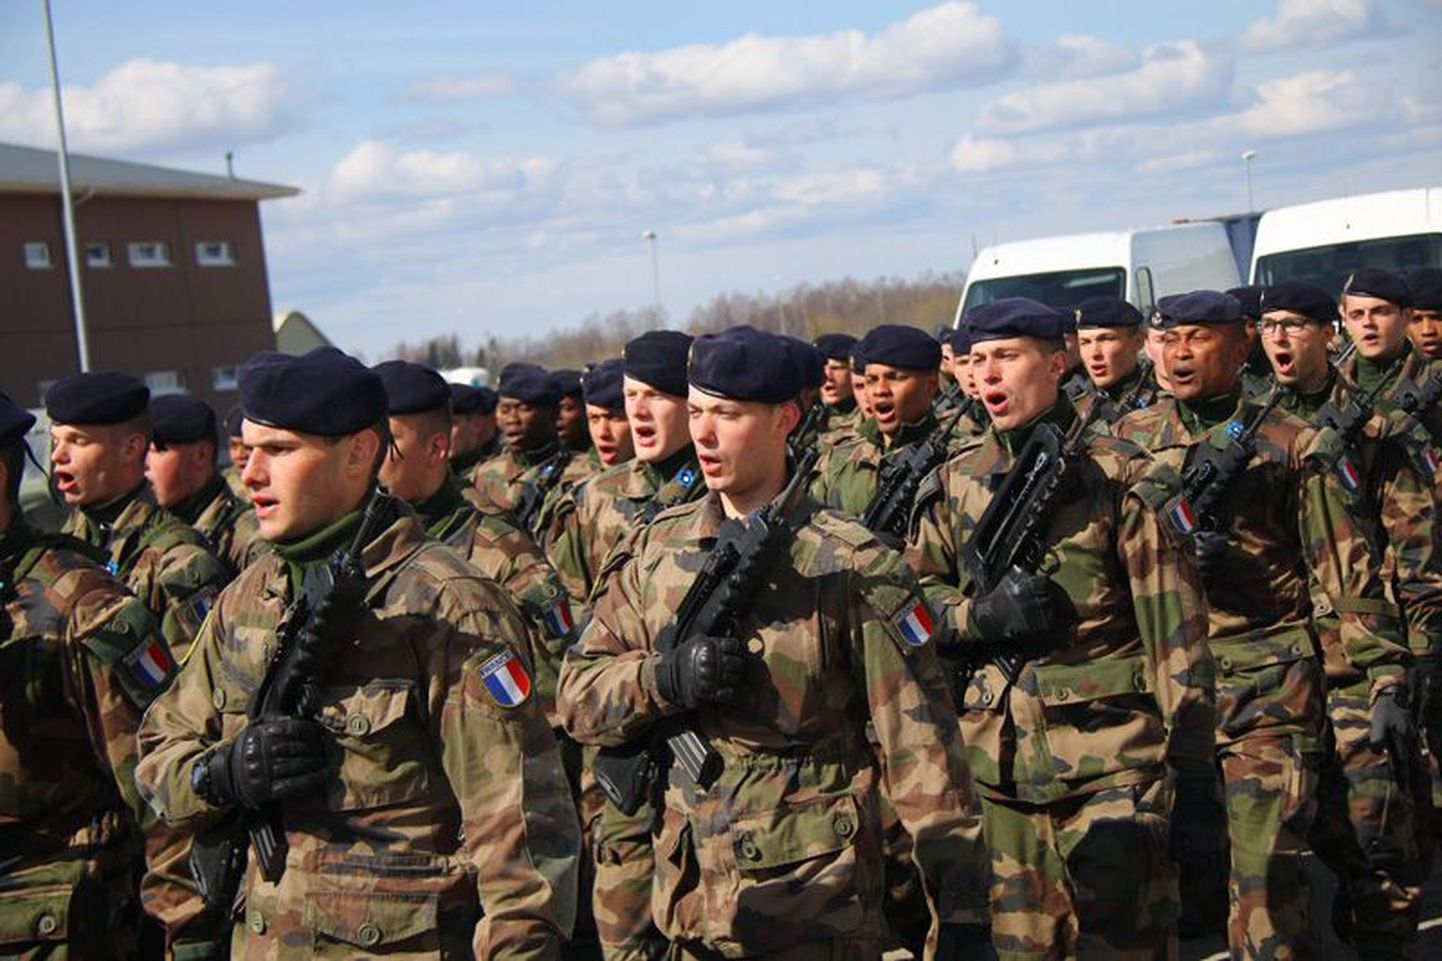 Prantsuse kaitseväelased demonstreerisid pidulikul avatseremoonial seda, et sõdurid oskavad lisaks marssimisele ka laulda.